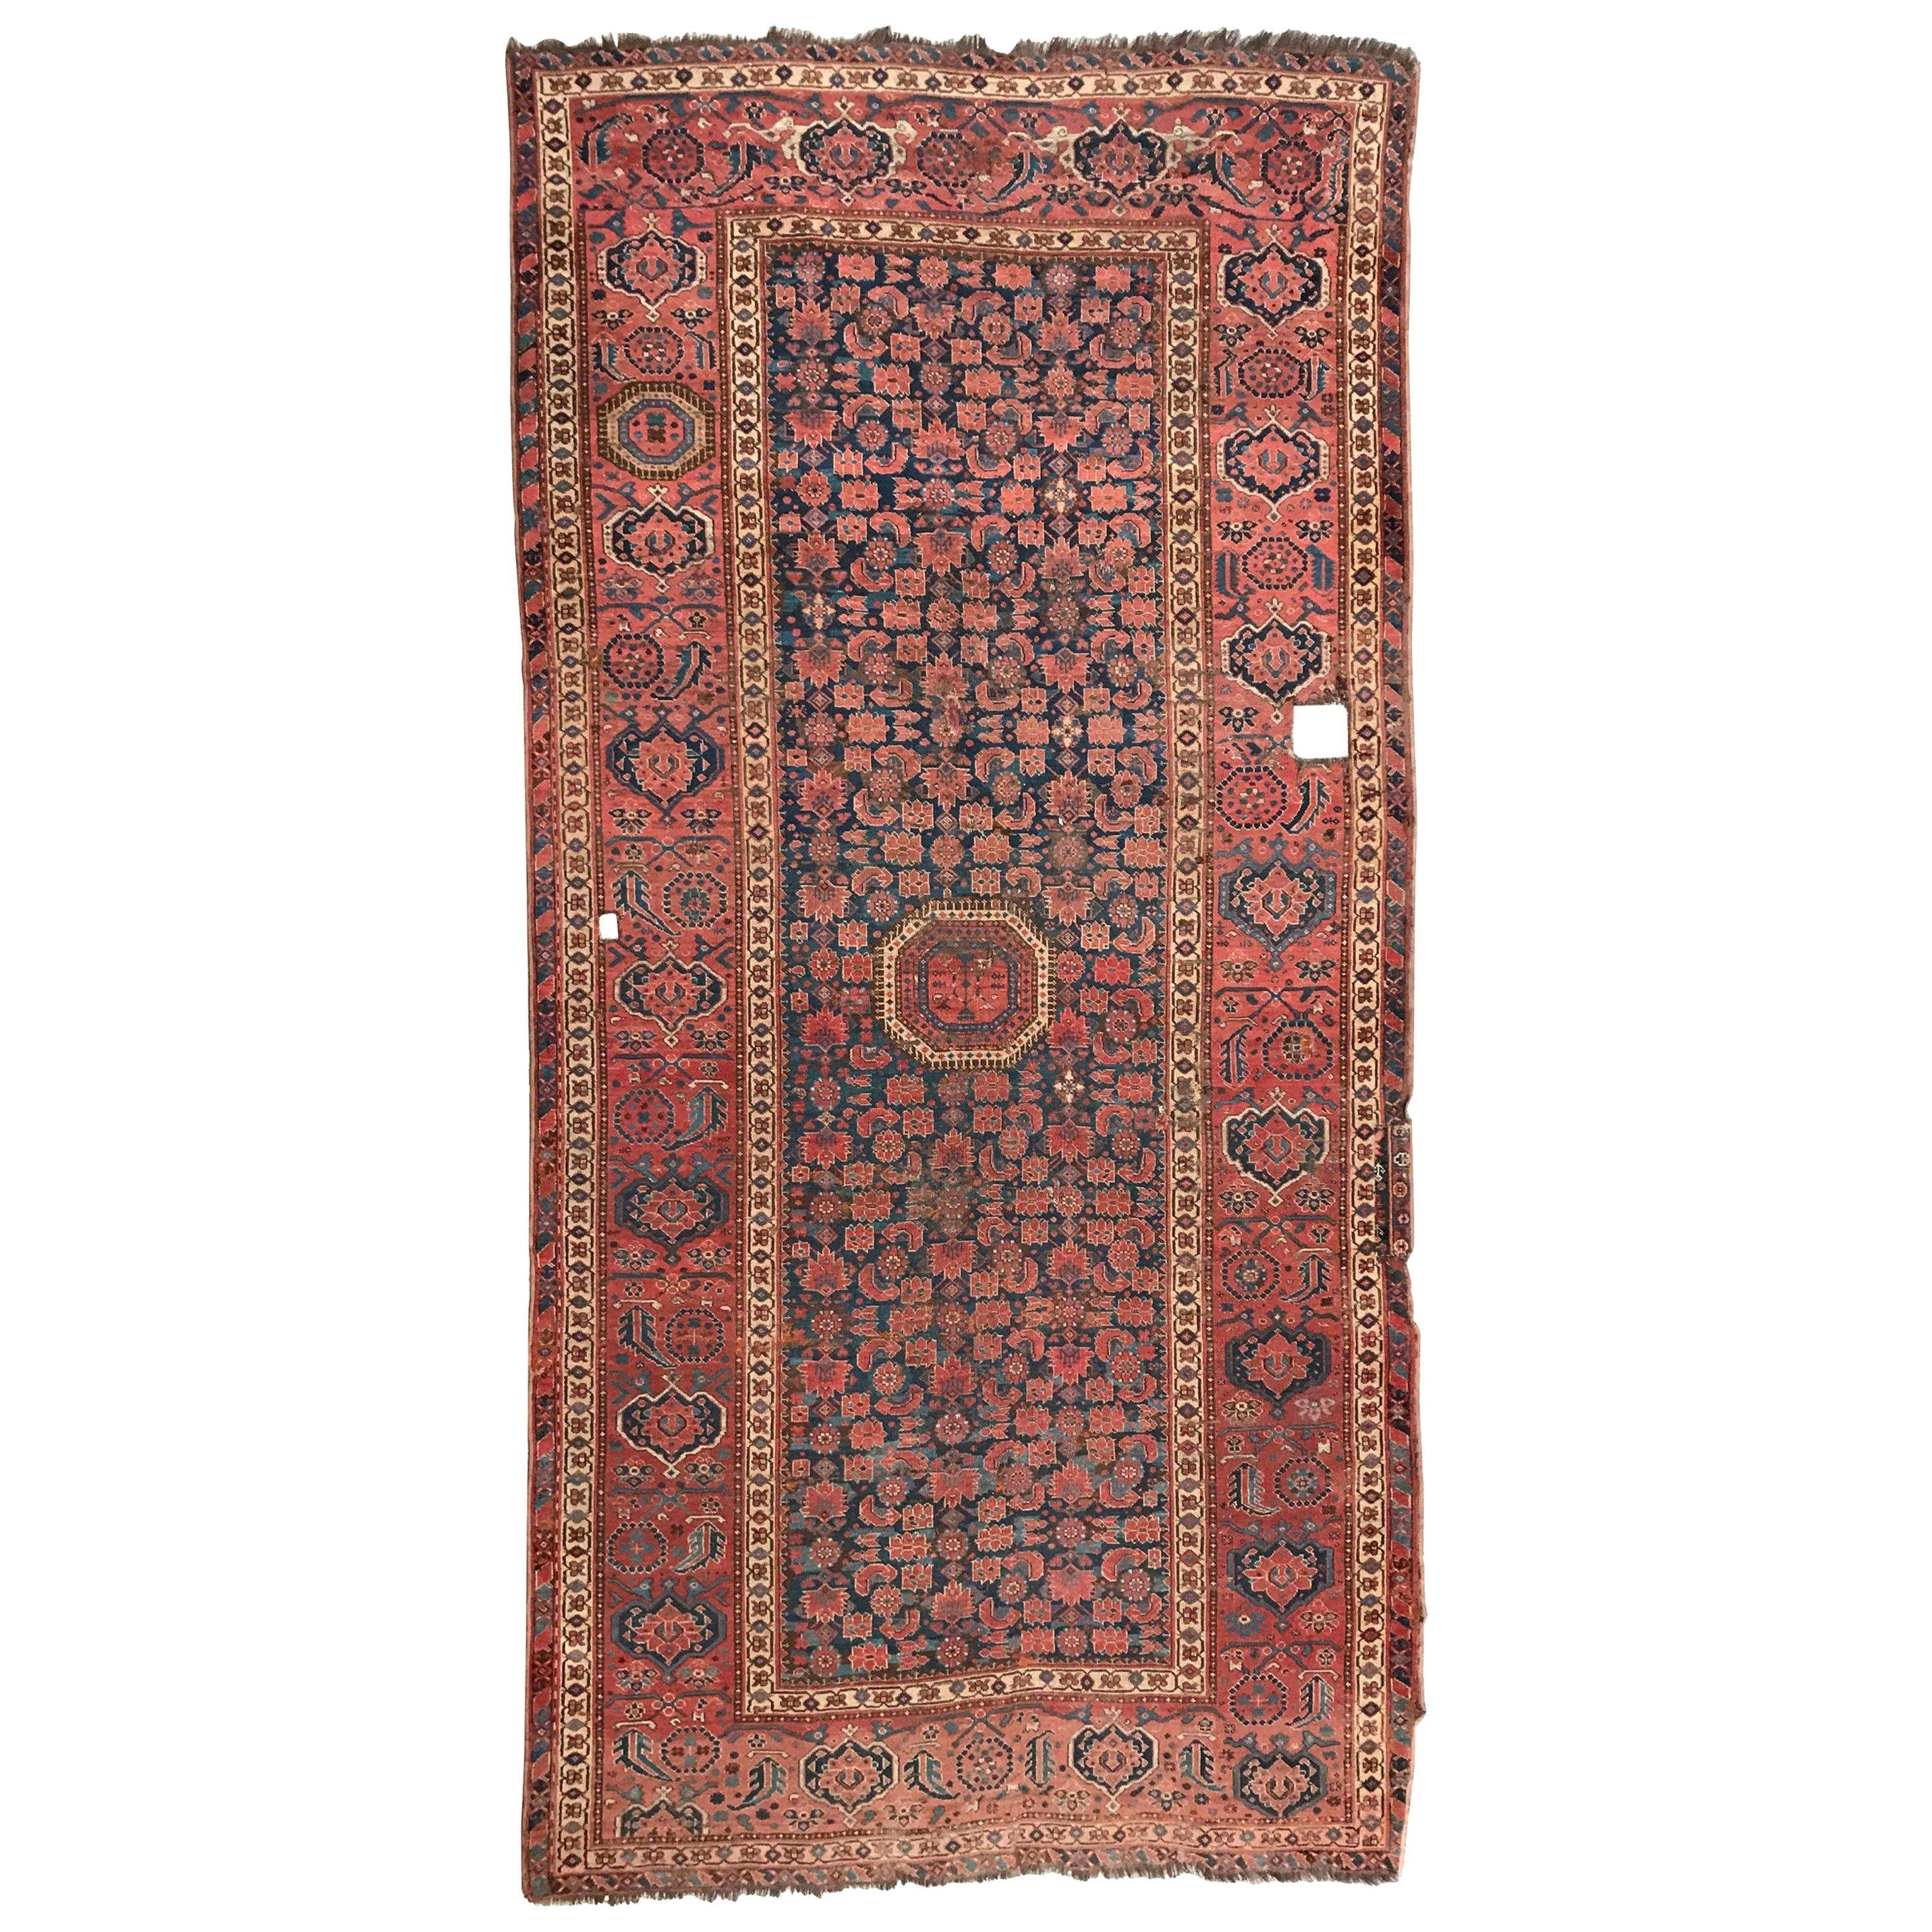 Nice Antique Long Beshir Afghan Rug